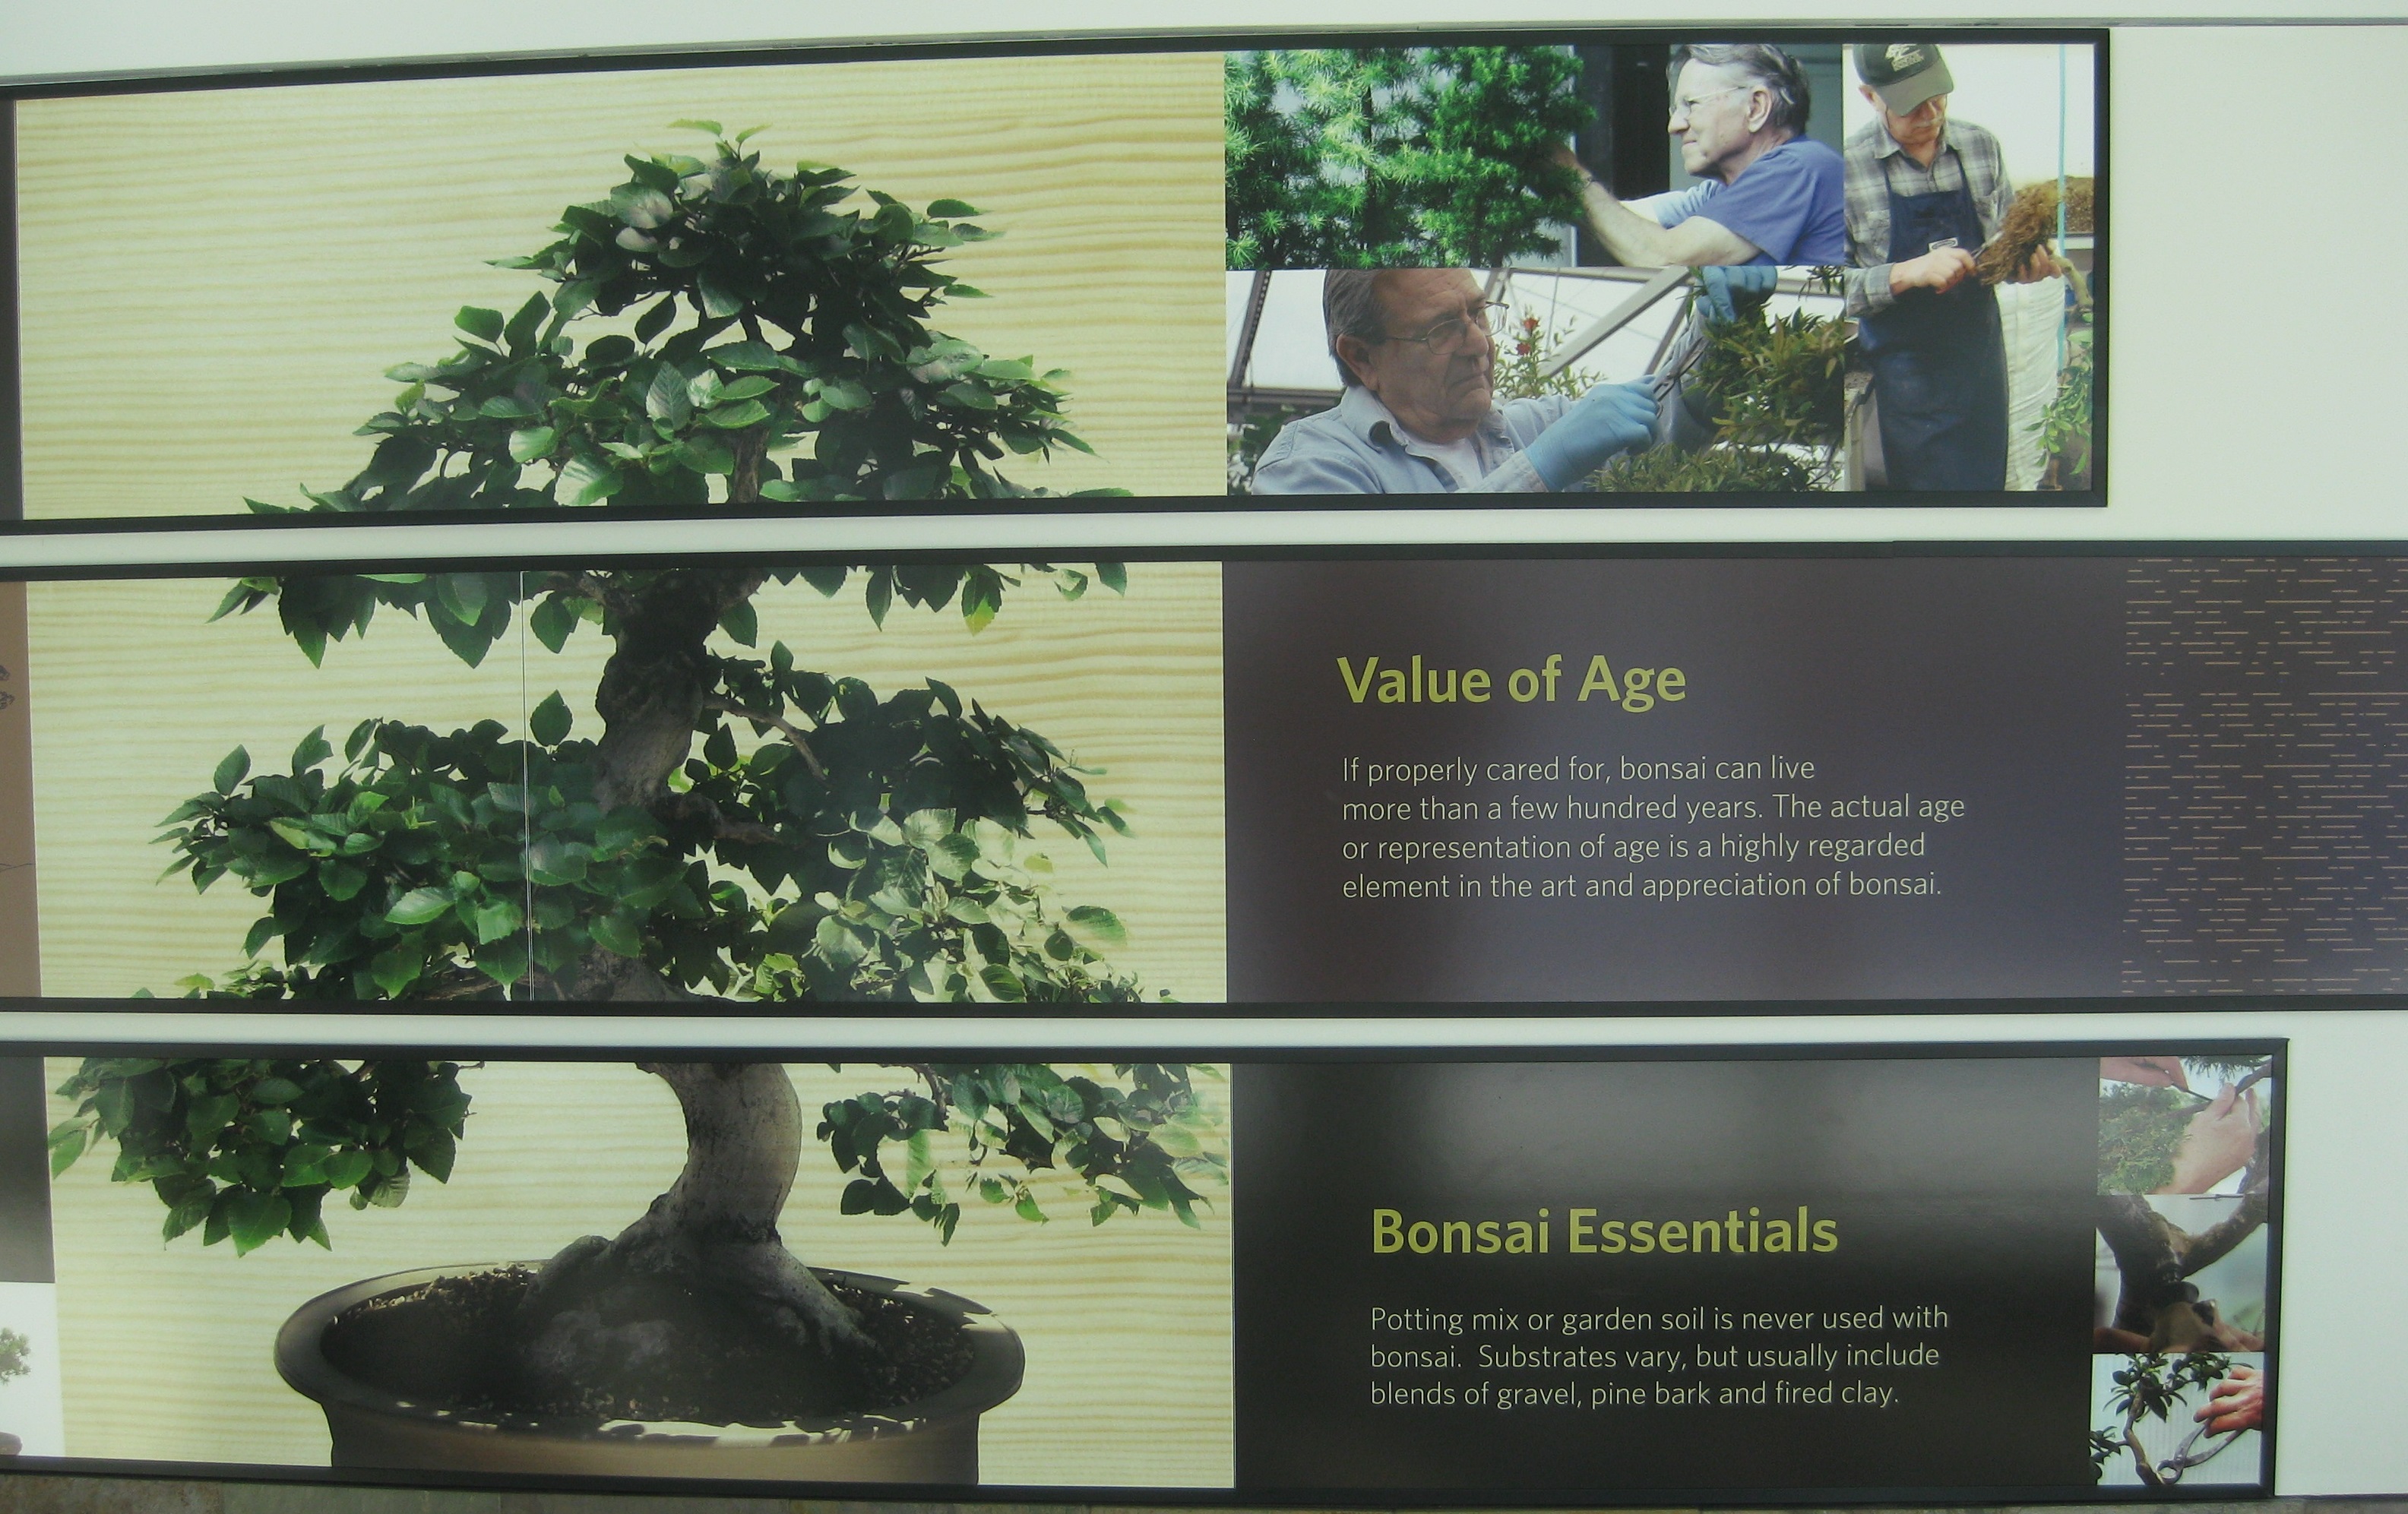 Bonsai value of age